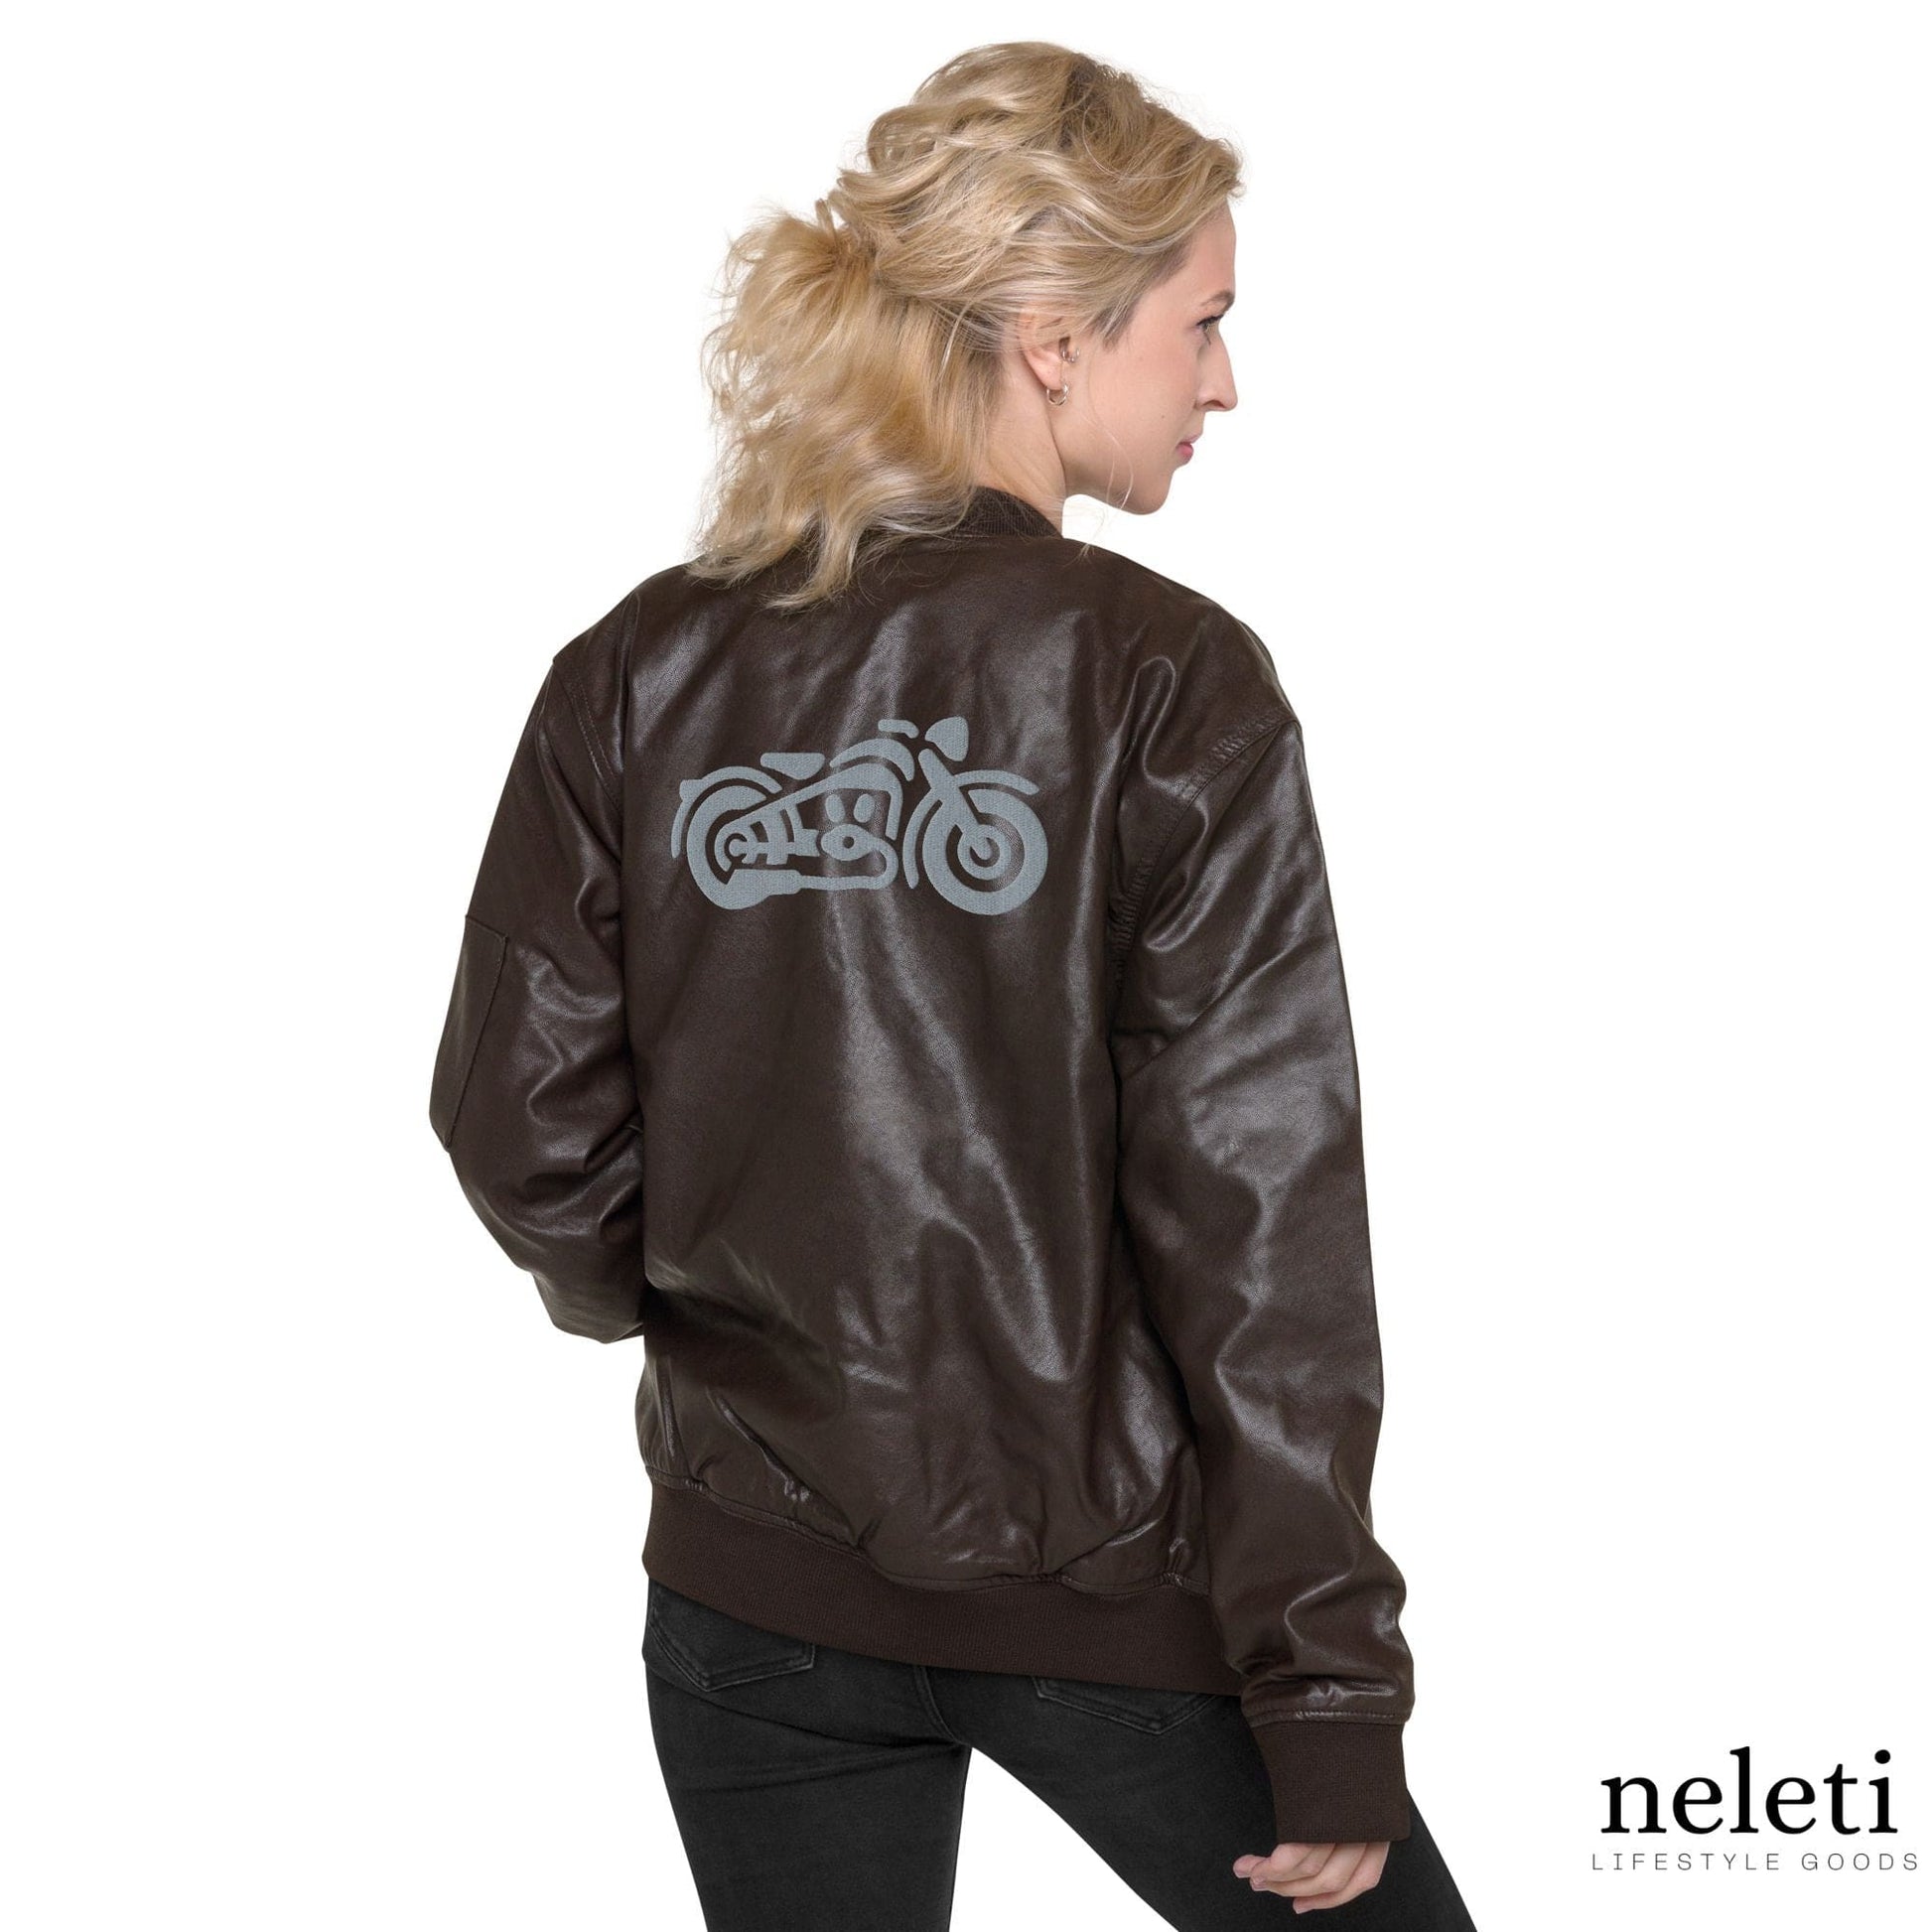 neleti.com-Leather-Bomber-Jaket